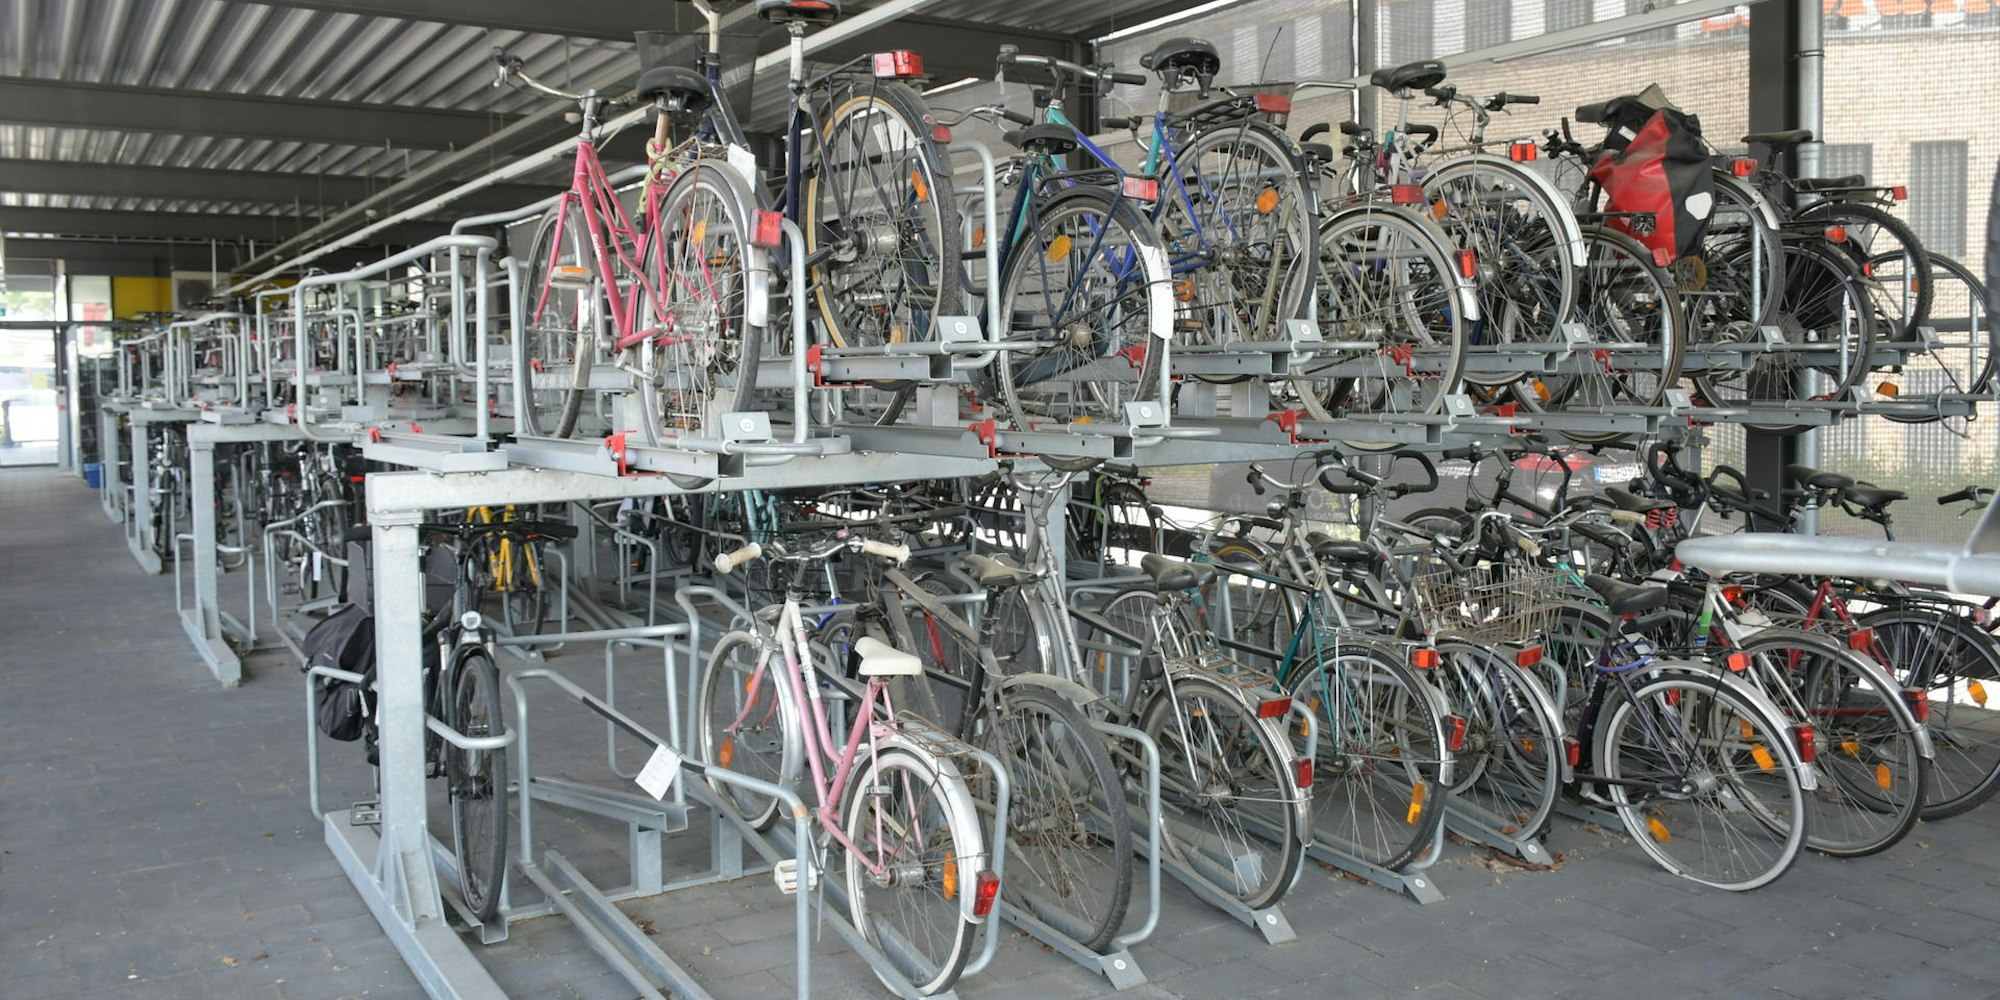 Beliebt als gesicherter Abstellplatz für das Fahrrad ist die Radstation. Sie liegt verkehrsgünstig am Bahnhof.